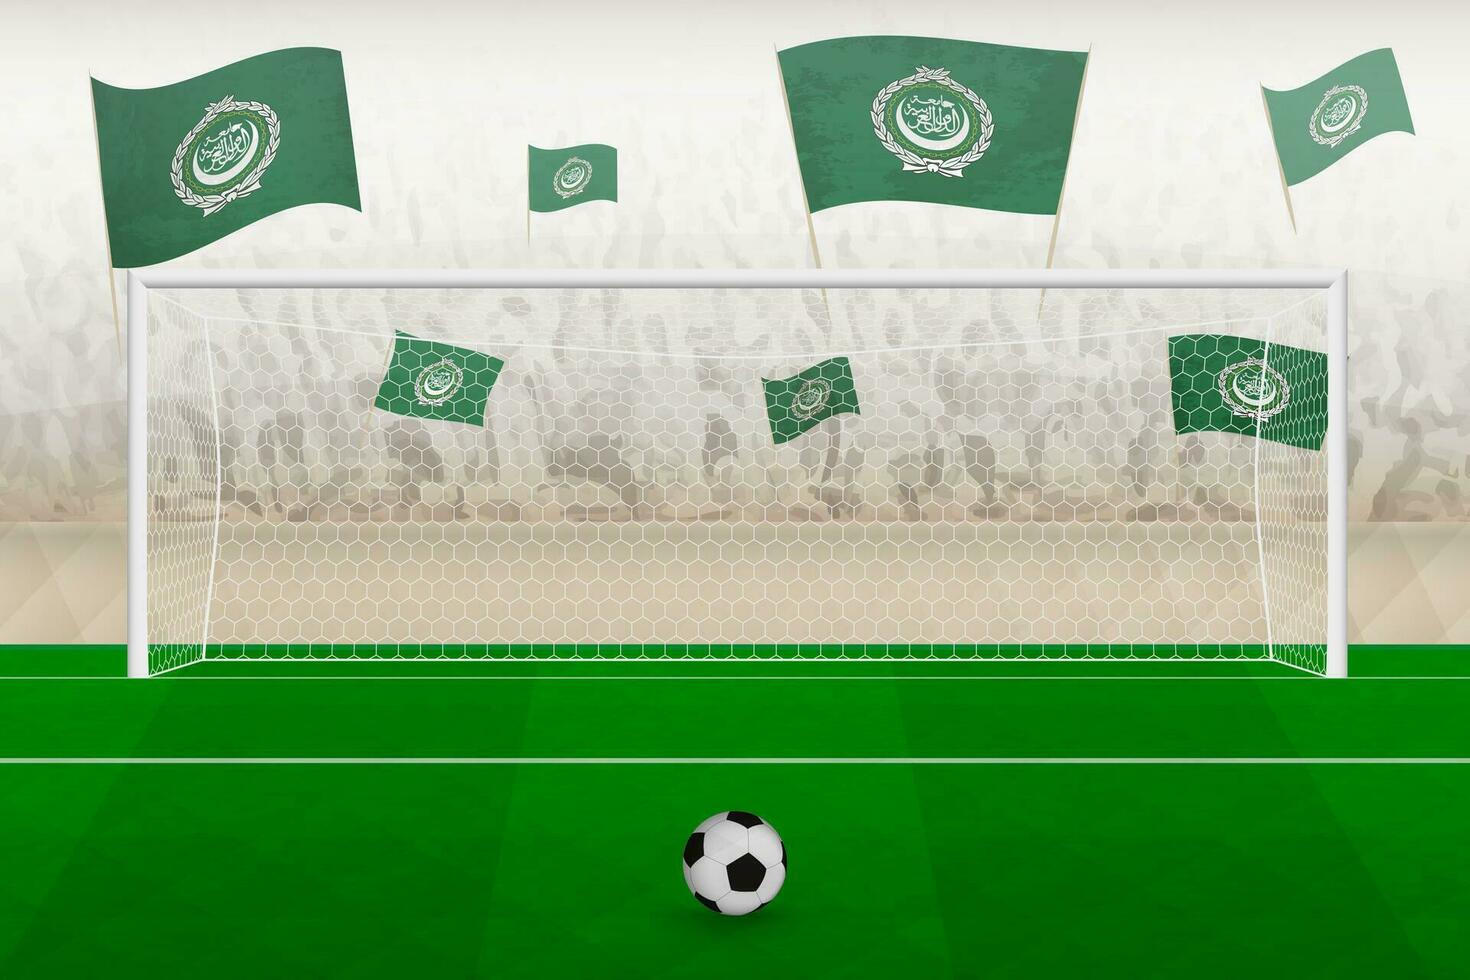 arabe ligue Football équipe Ventilateurs avec drapeaux de arabe ligue applaudissement sur stade, peine donner un coup concept dans une football correspondre. vecteur